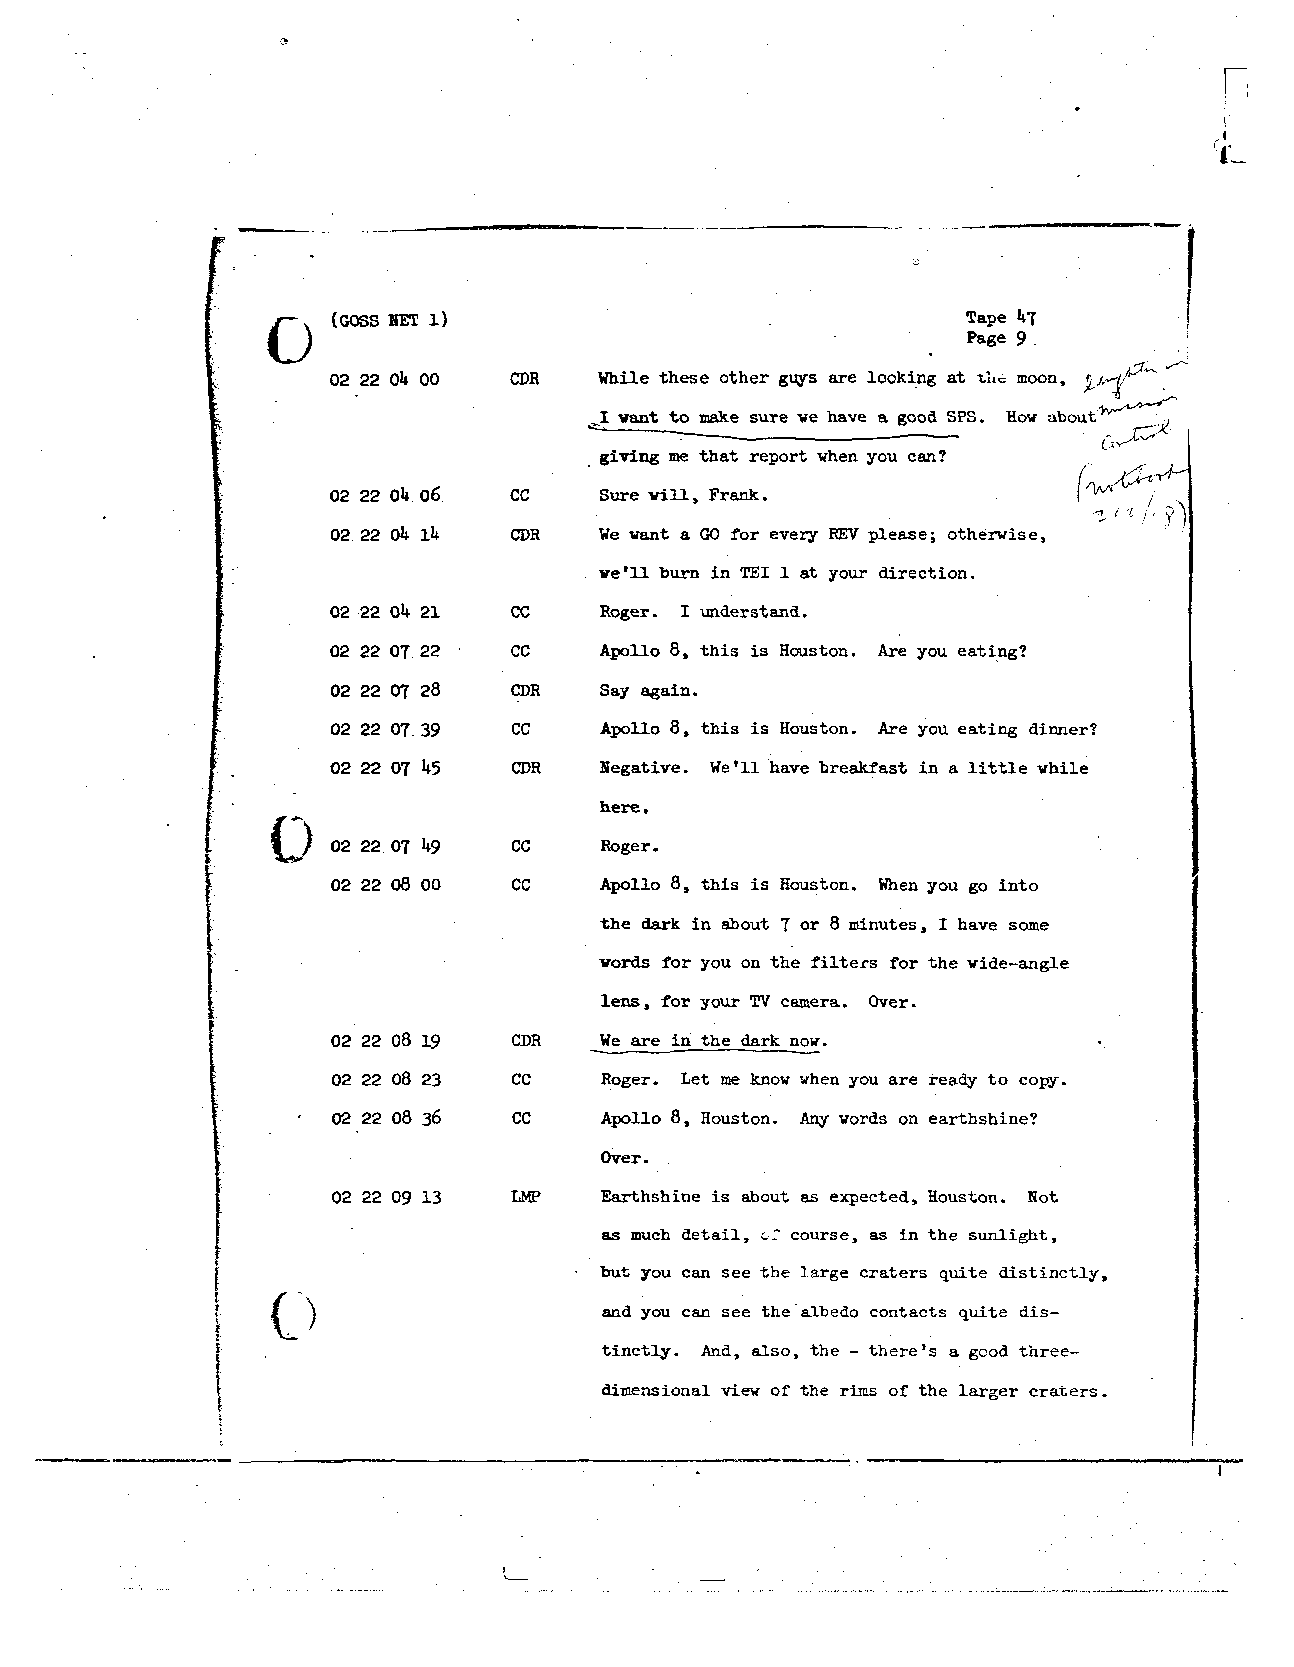 Page 366 of Apollo 8’s original transcript